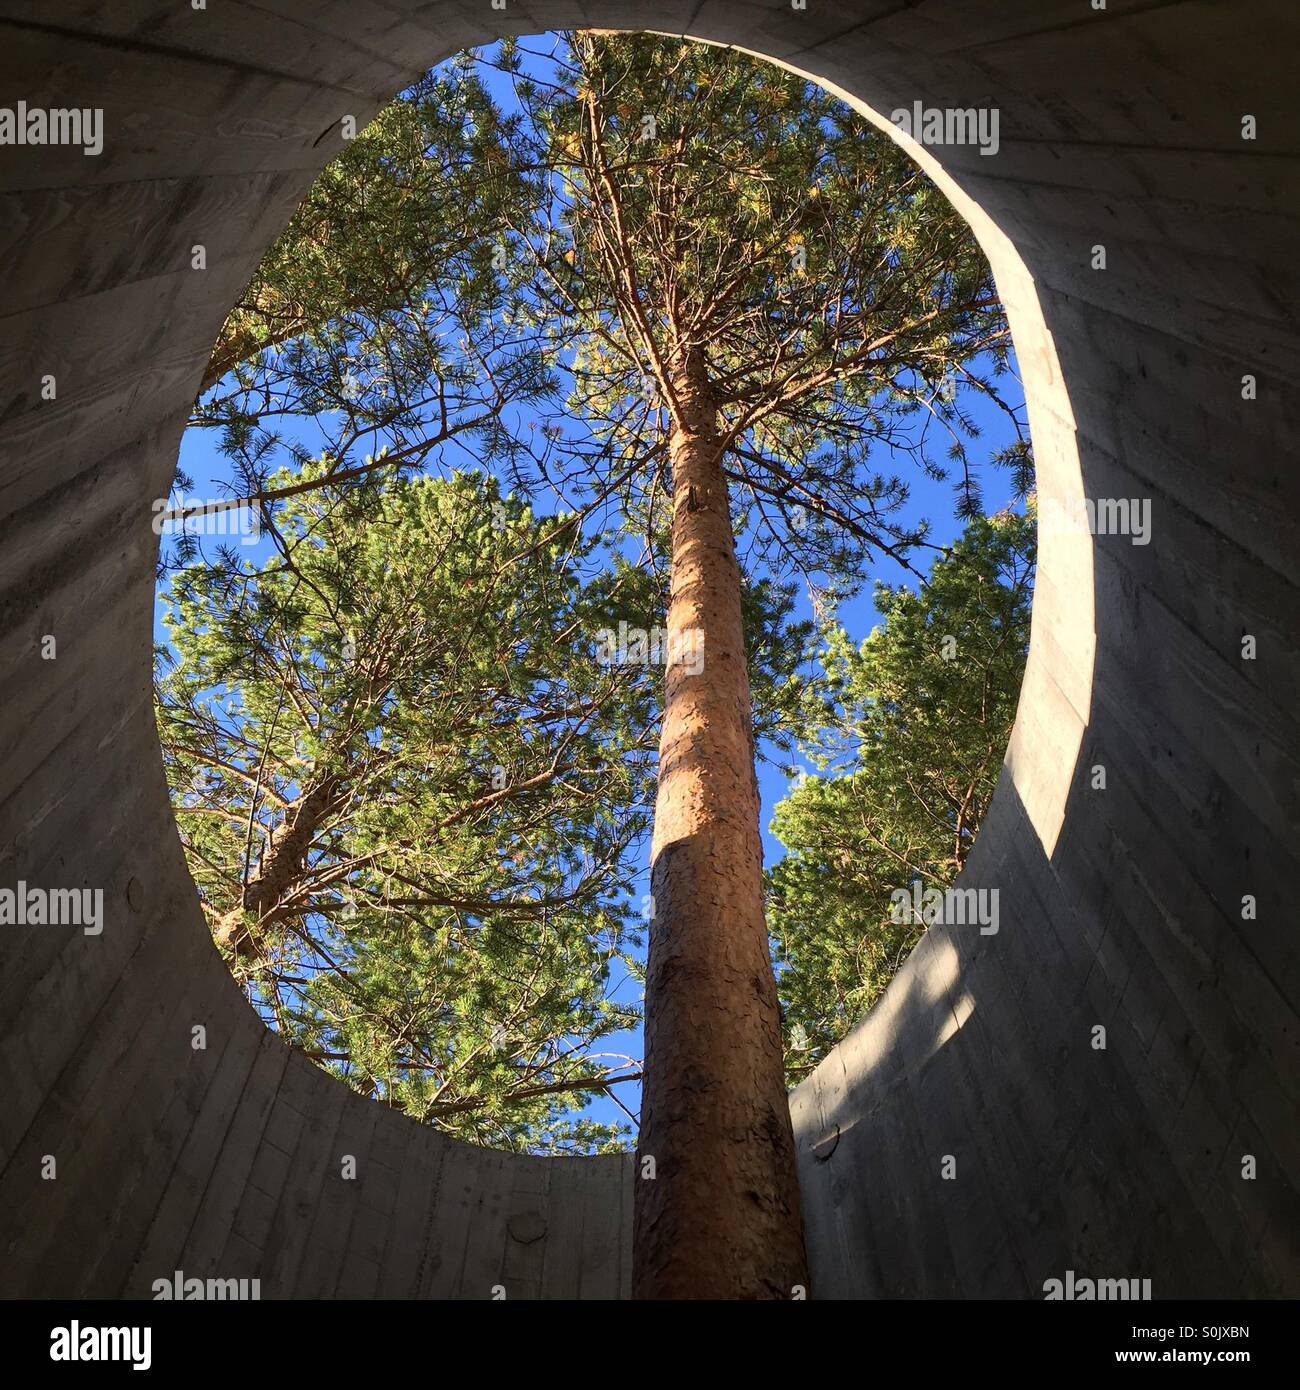 Tree growing through viewing platform, Norway Stock Photo